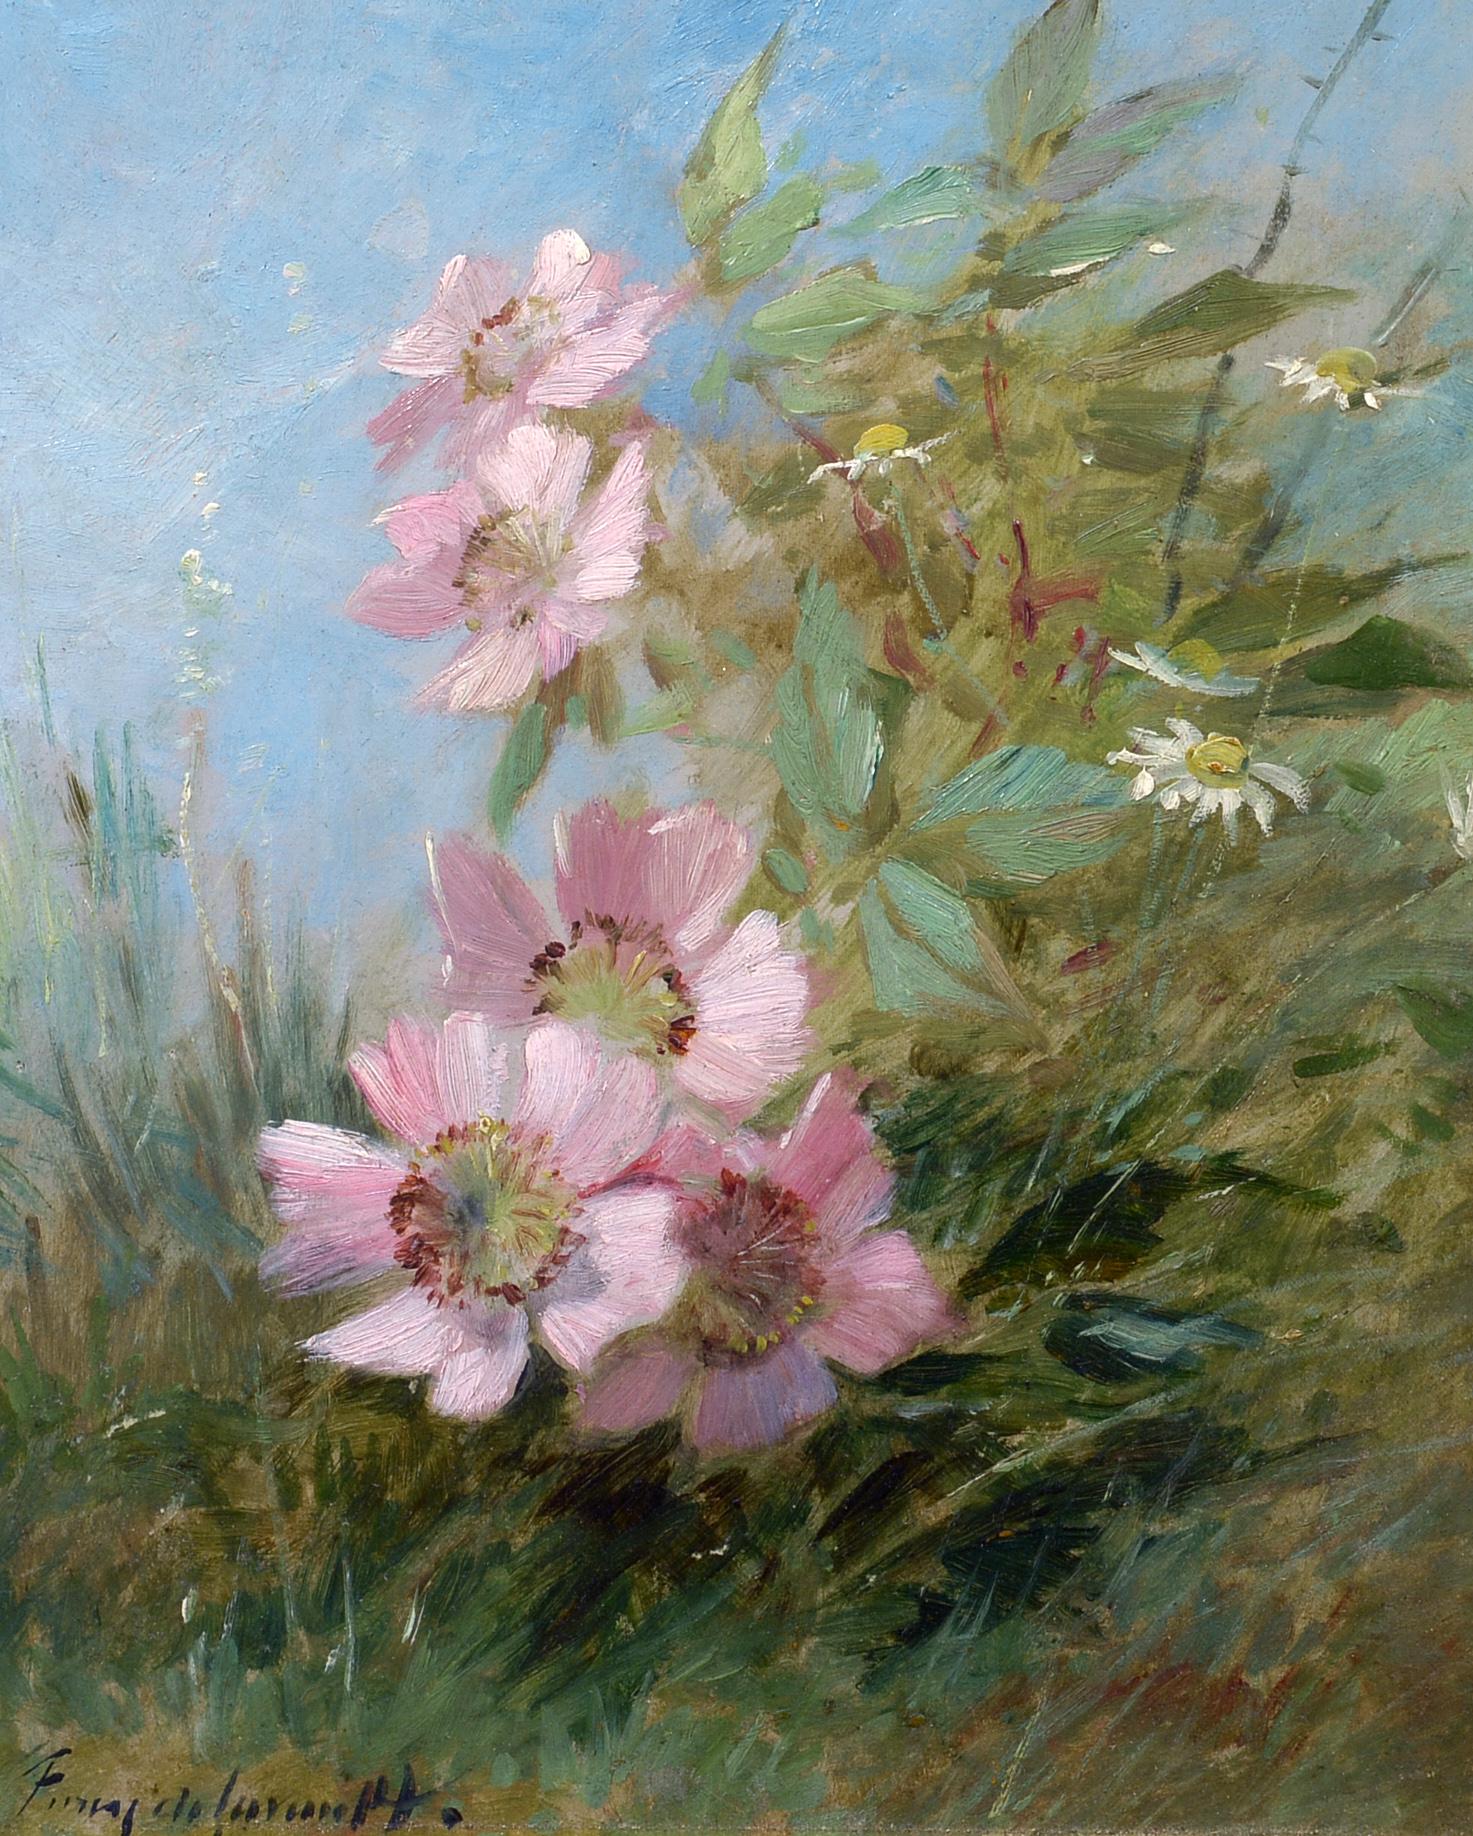 Landscape Painting Albert Tibule Furcy de Lavault  - Fleurs sauvages, impressionniste, Nature, paysage, huile sur toile